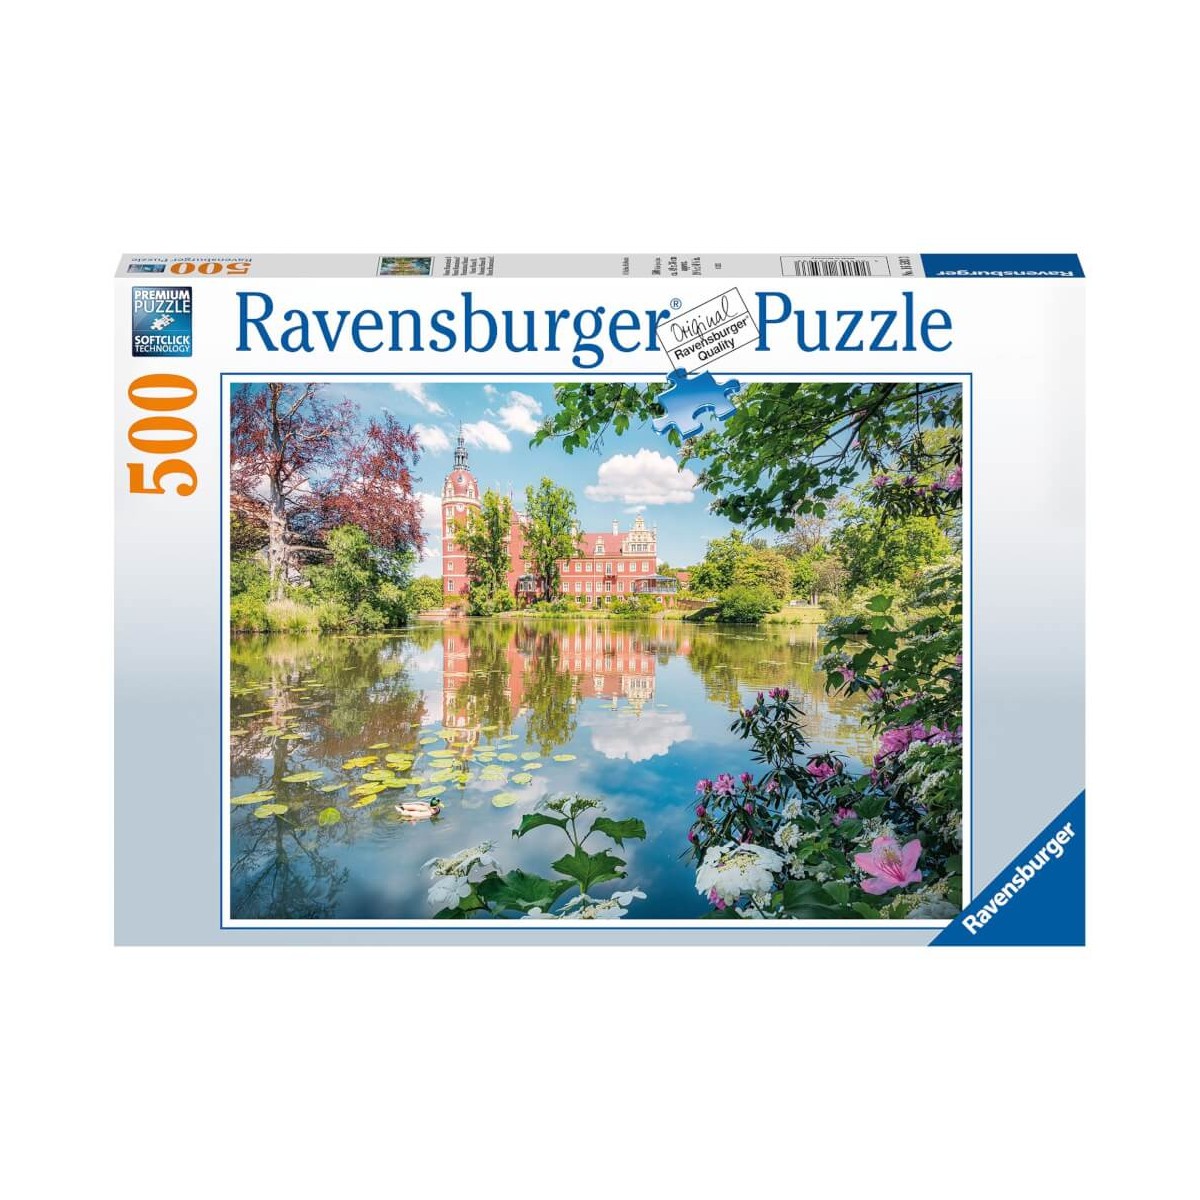 Ravensburger 16593 Puzzle Märchenhaftes Schloss Muskau 500 Teile